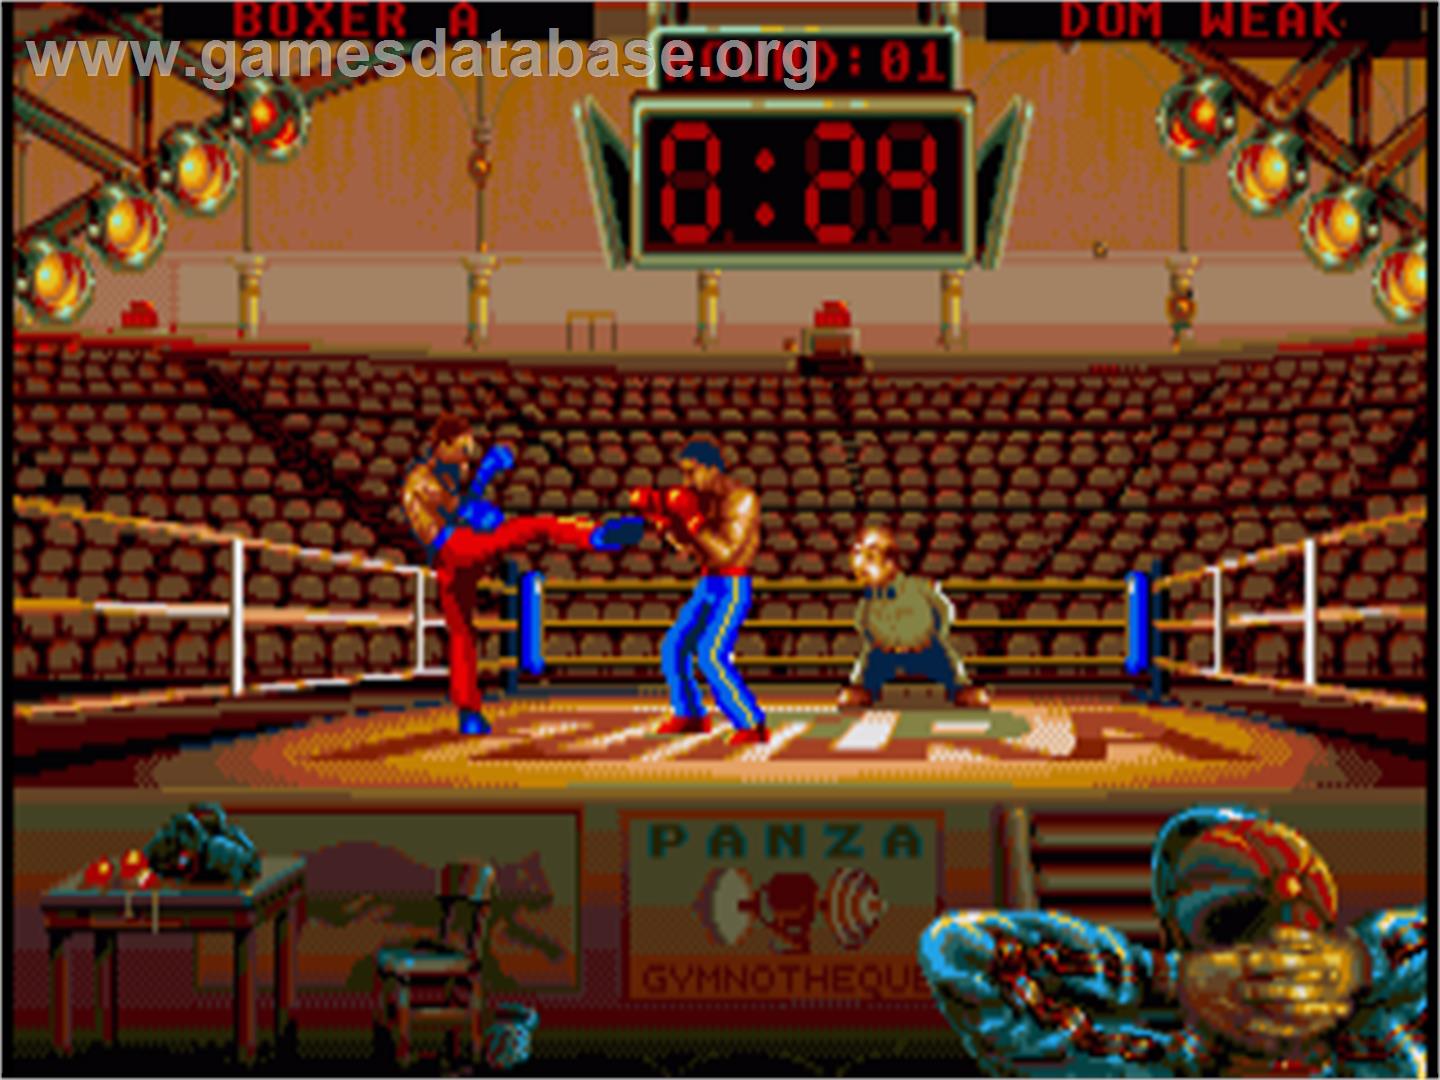 Panza Kick Boxing - Commodore Amiga - Artwork - In Game